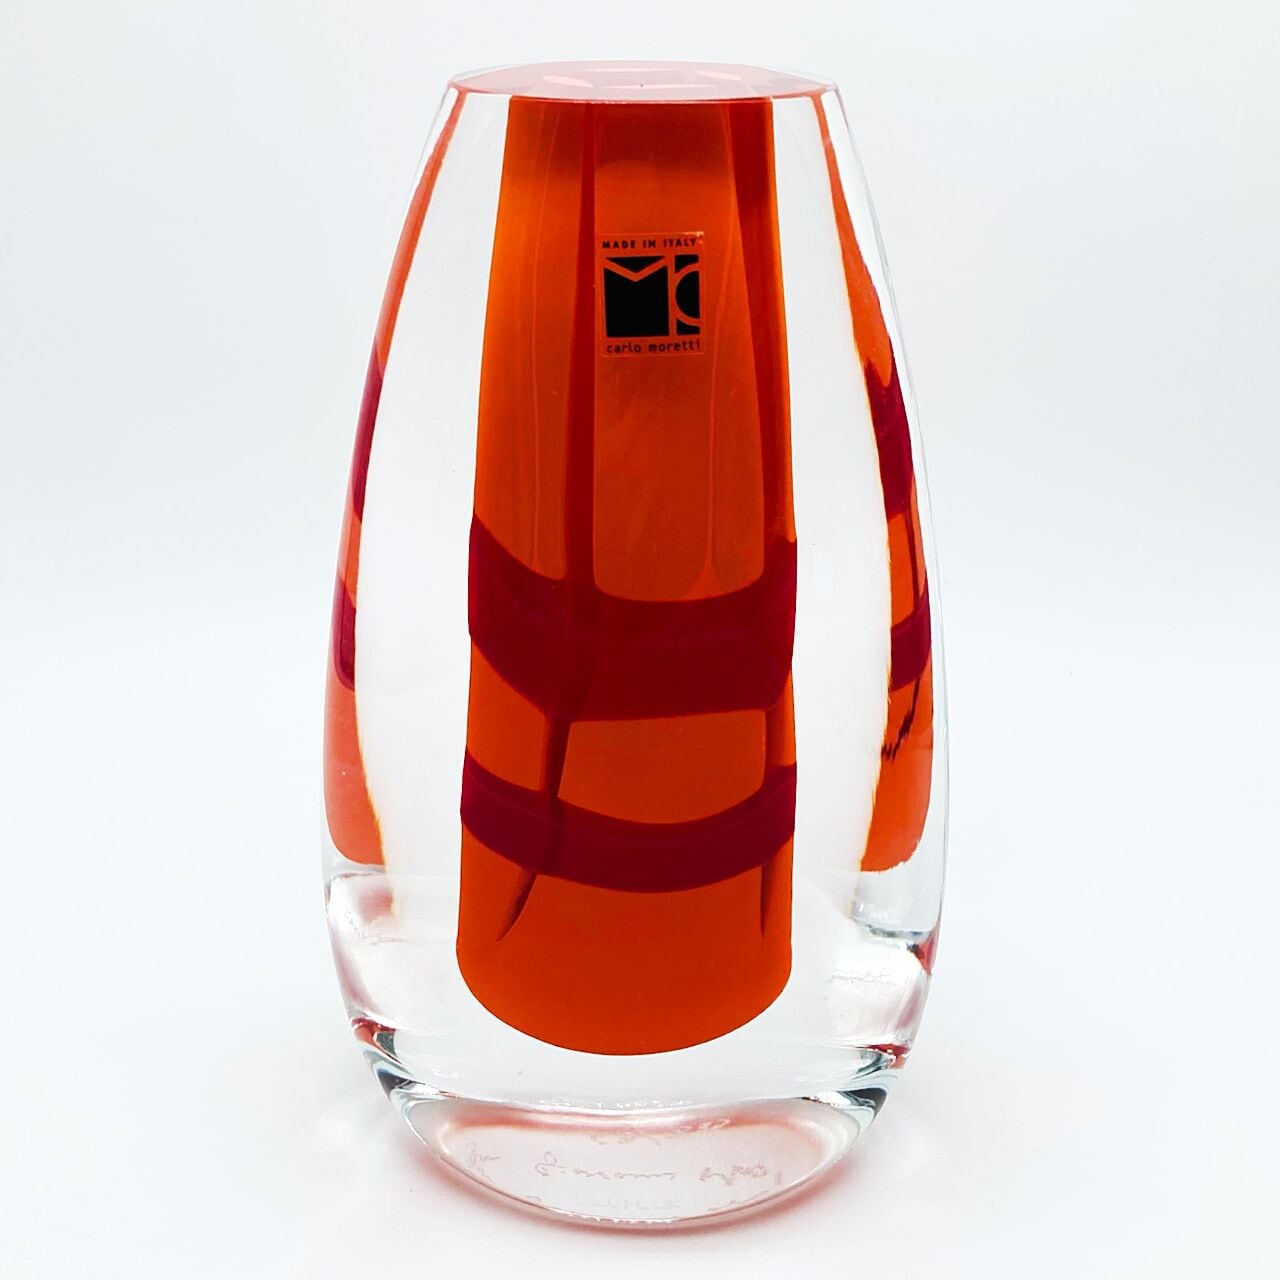 ヴェネチアガラス ムラノ カルロモレッティ Carlo Moretti minimax rima ガラスオブジェ 置物 ベネチアン グラス  19.0cm | CRAFTS DESIGN SHOP powered by BASE